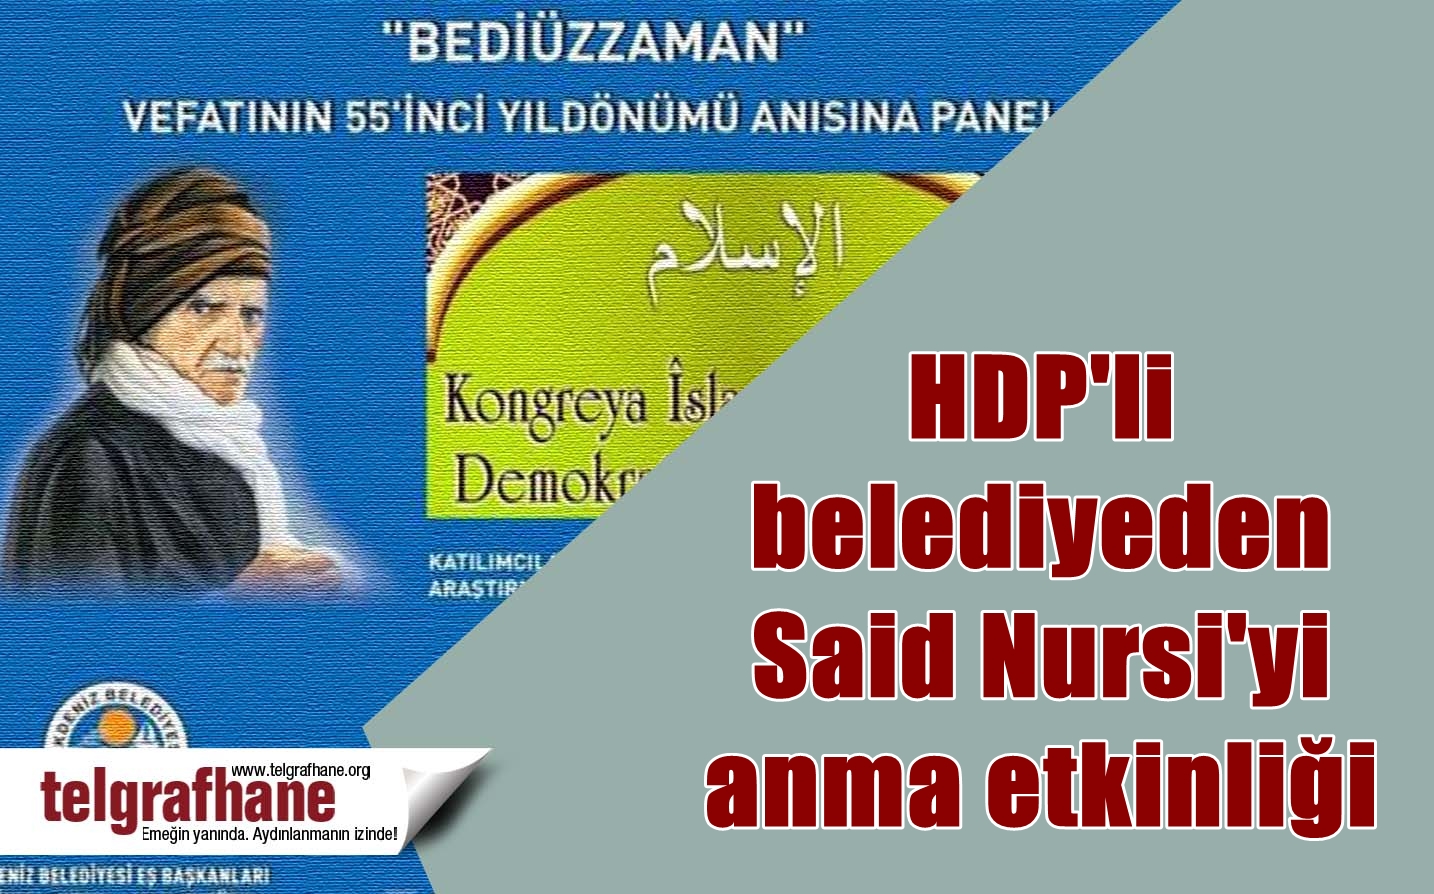 HDP’li belediyeden Said Nursi’yi anma etkinliği